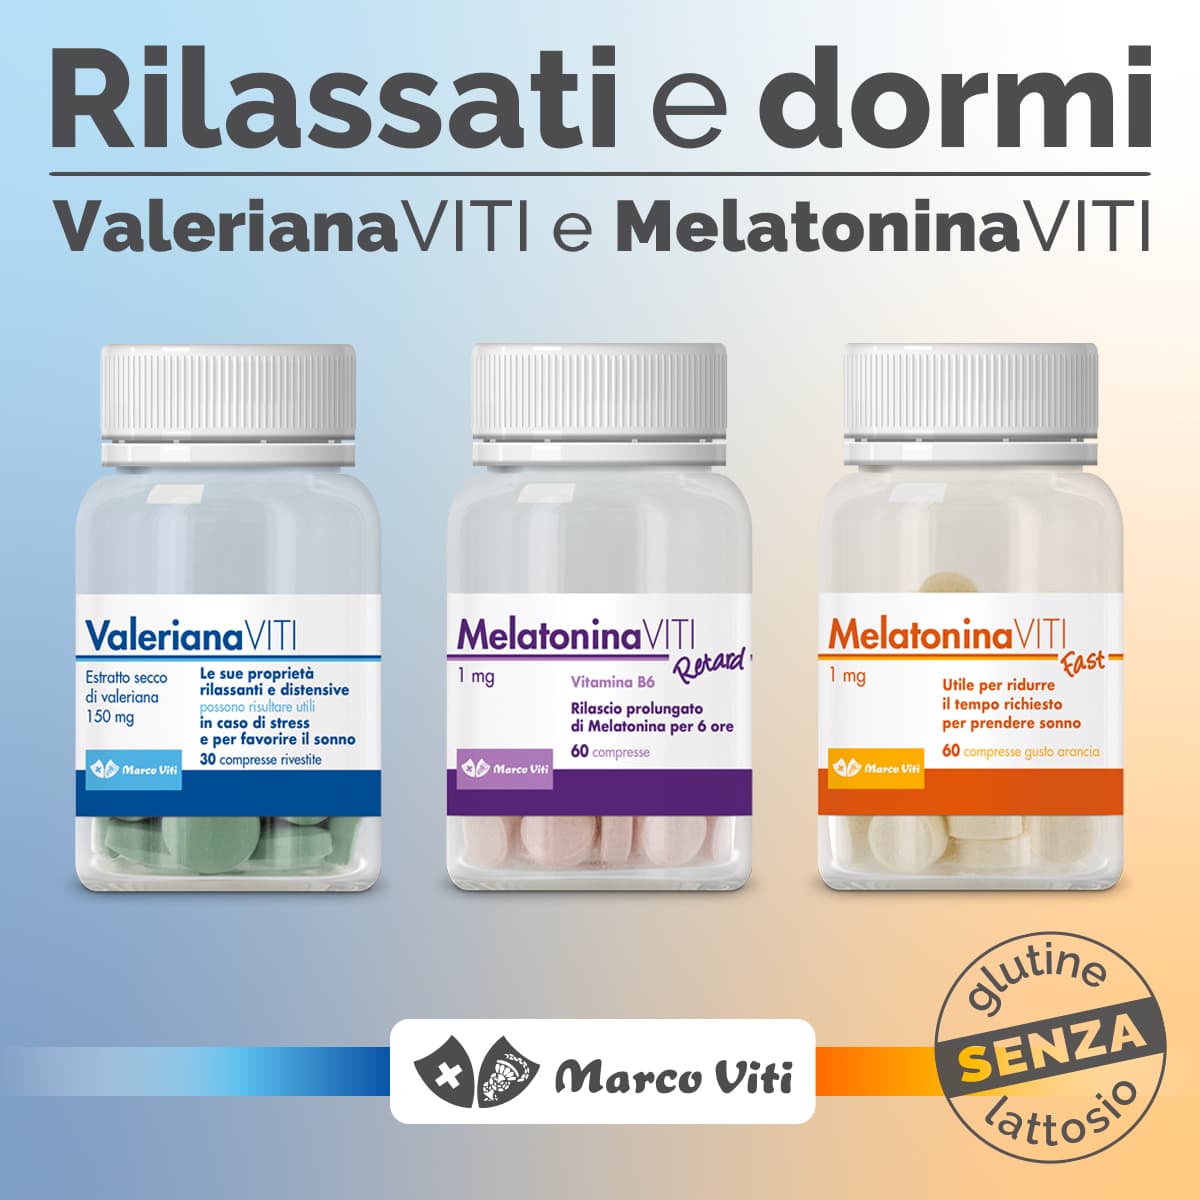 Marco Viti - Linea Sonno - Rilassati e dormi con Valeriana Viti e Melatonina Viti